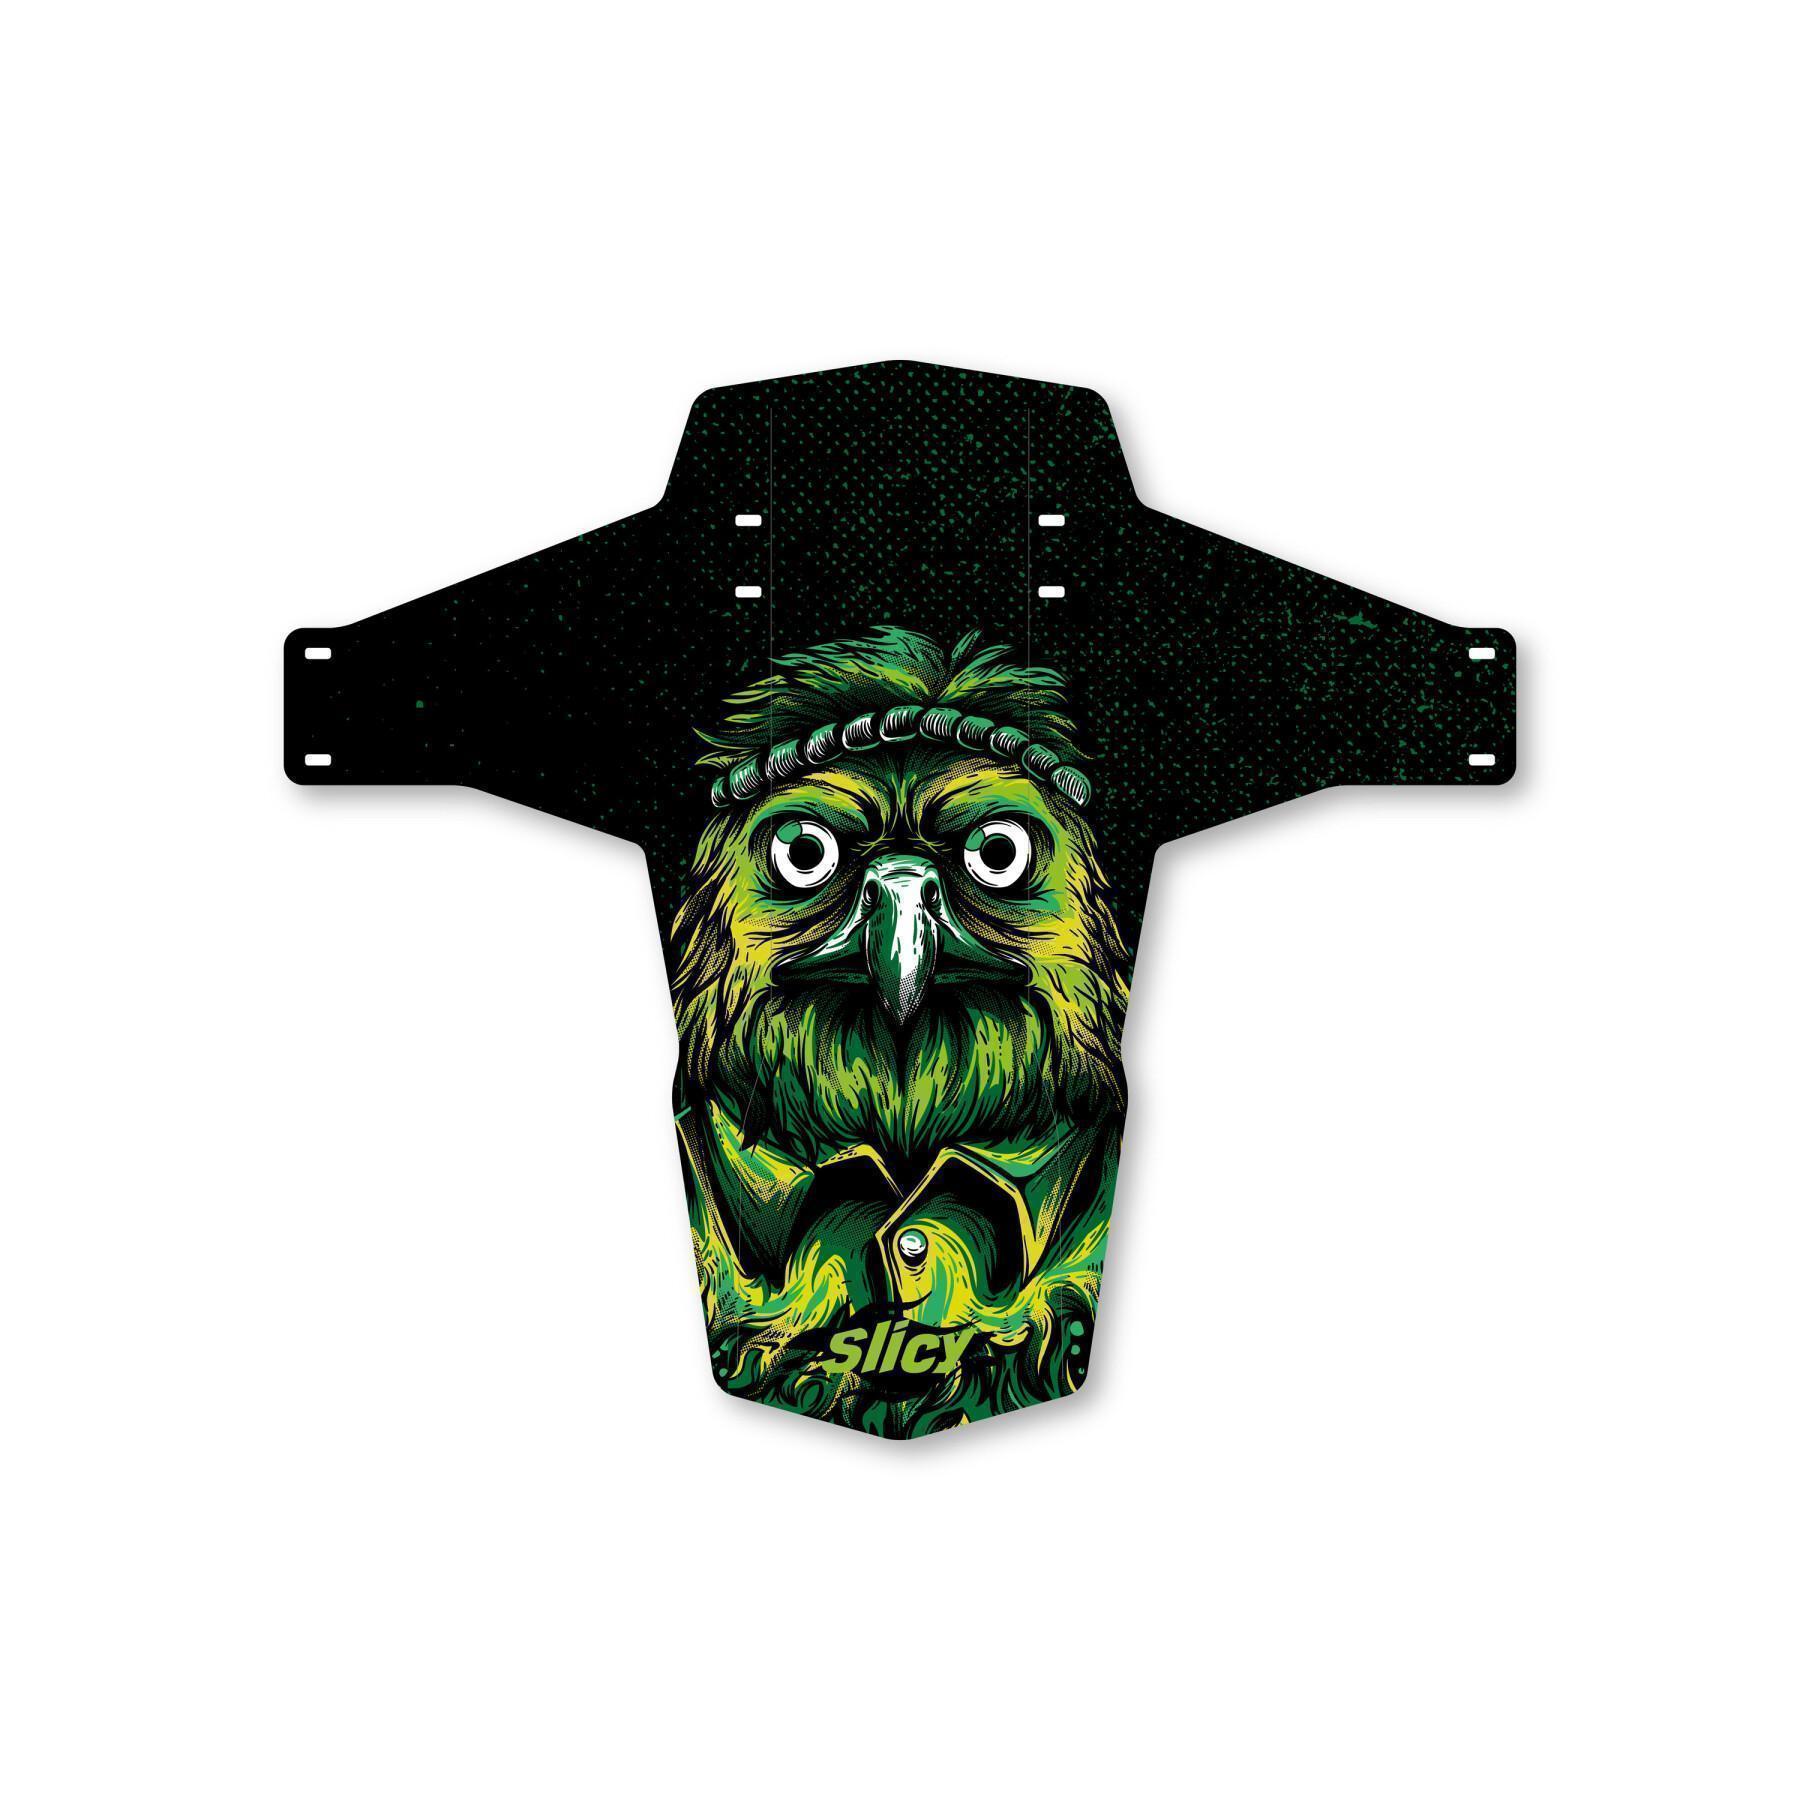 Mudguard Slicy Enduro/DH Mr Owl